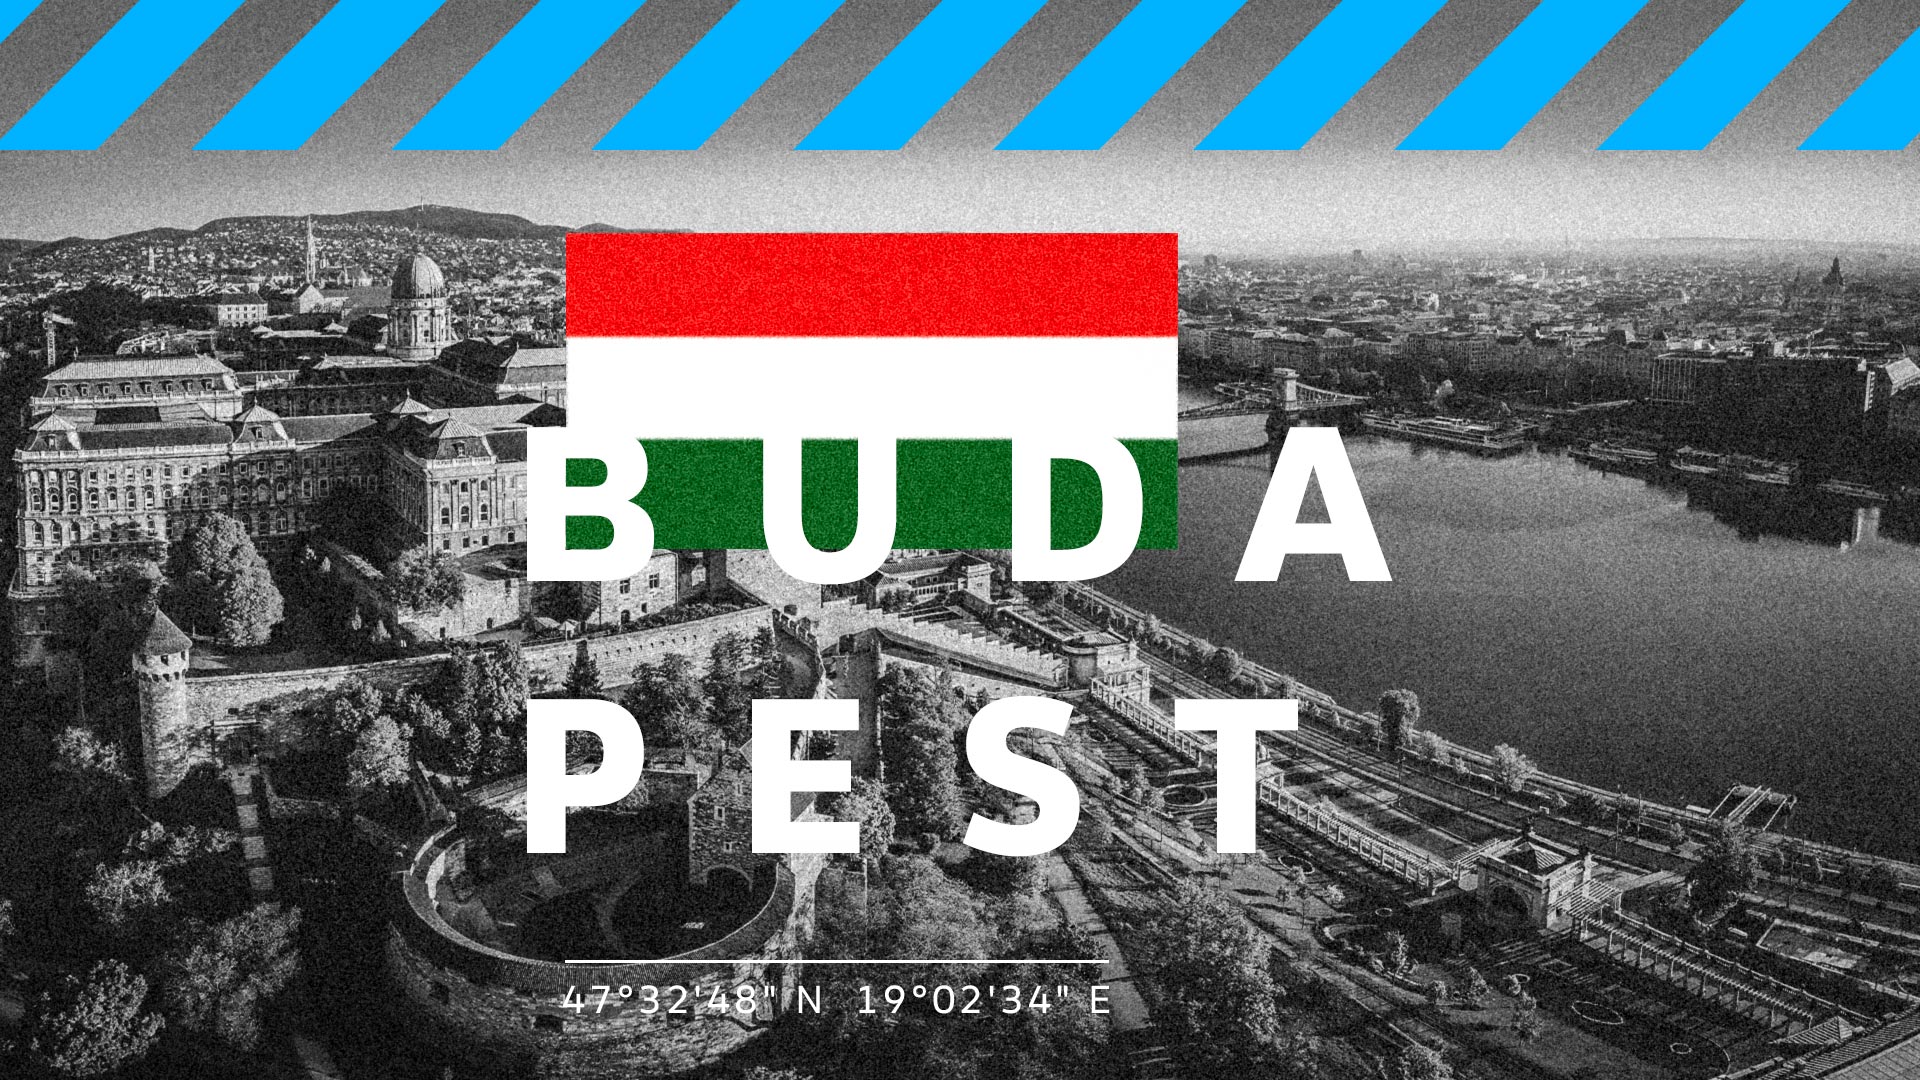 UEFA EURO 2020 Budapest